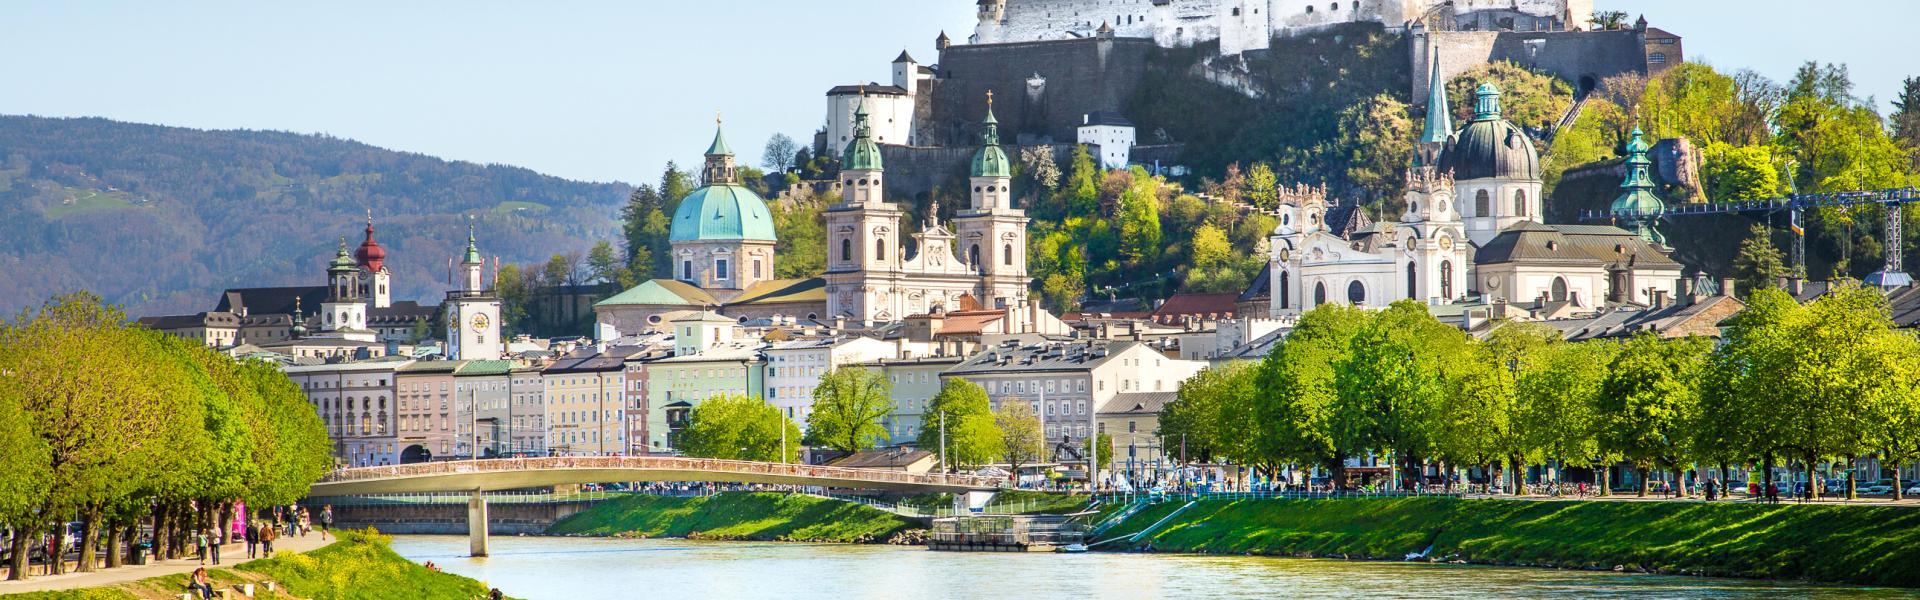 Salzburg maakt nog steeds muziek - Casamundo